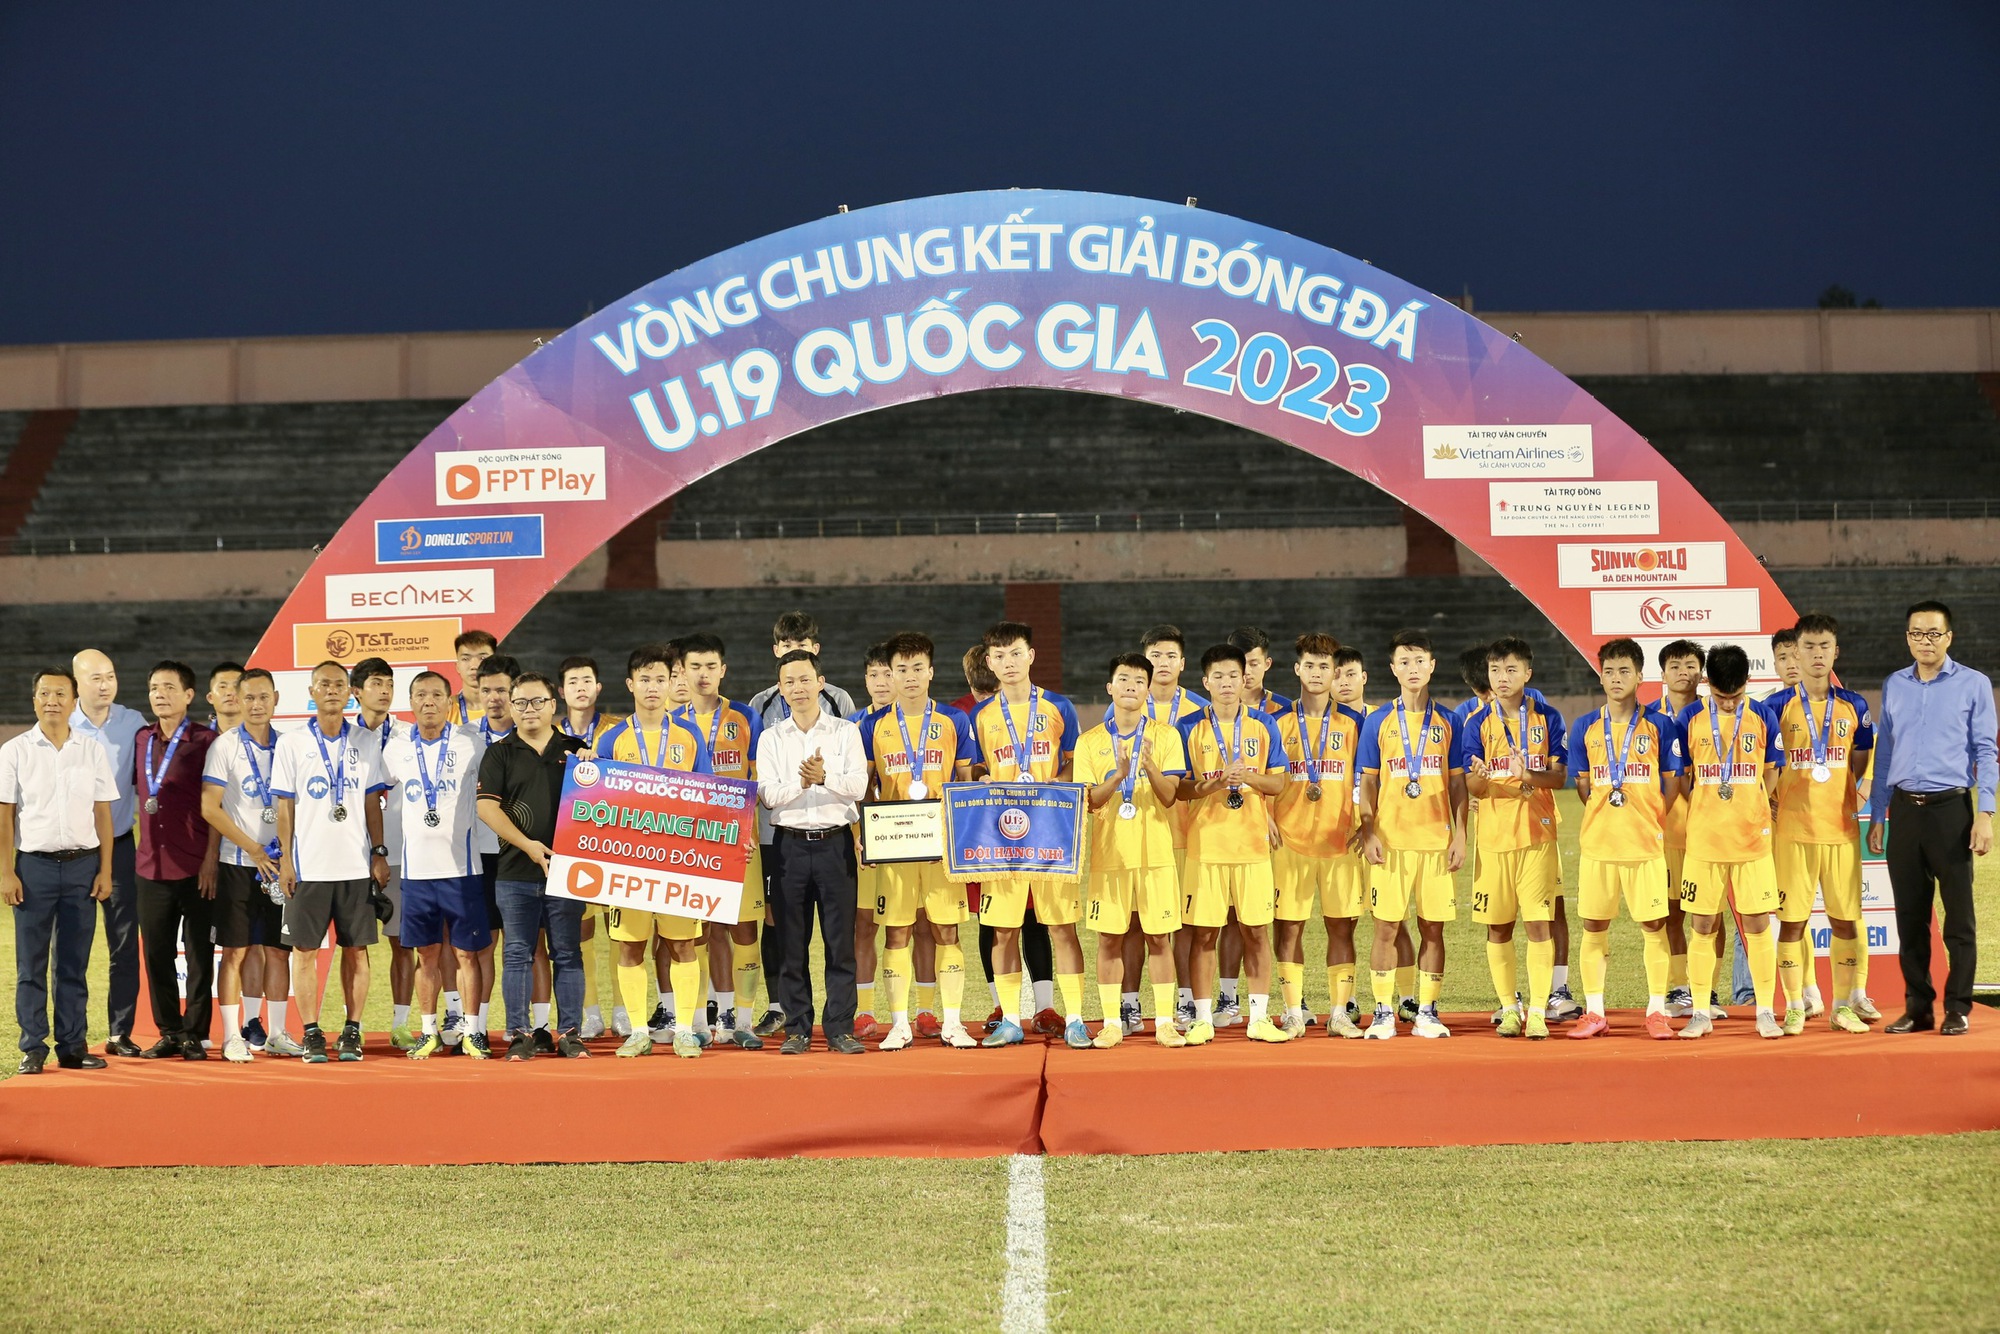 Ngọc Mỹ tỏa sáng, Thanh Hóa vô địch U.19 quốc gia 2023 - Ảnh 10.